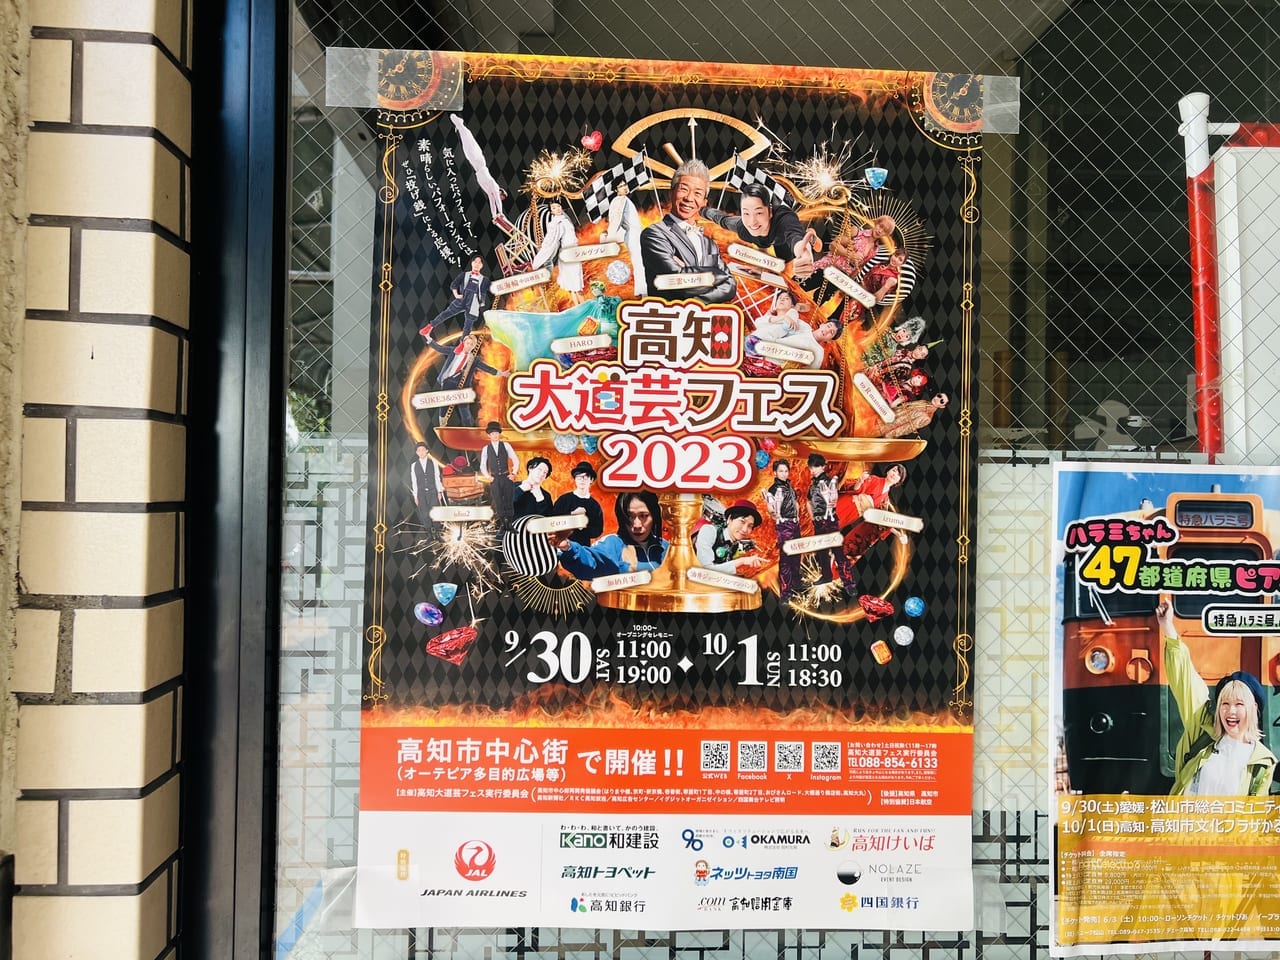 「高知大道芸フェス2023」のポスター